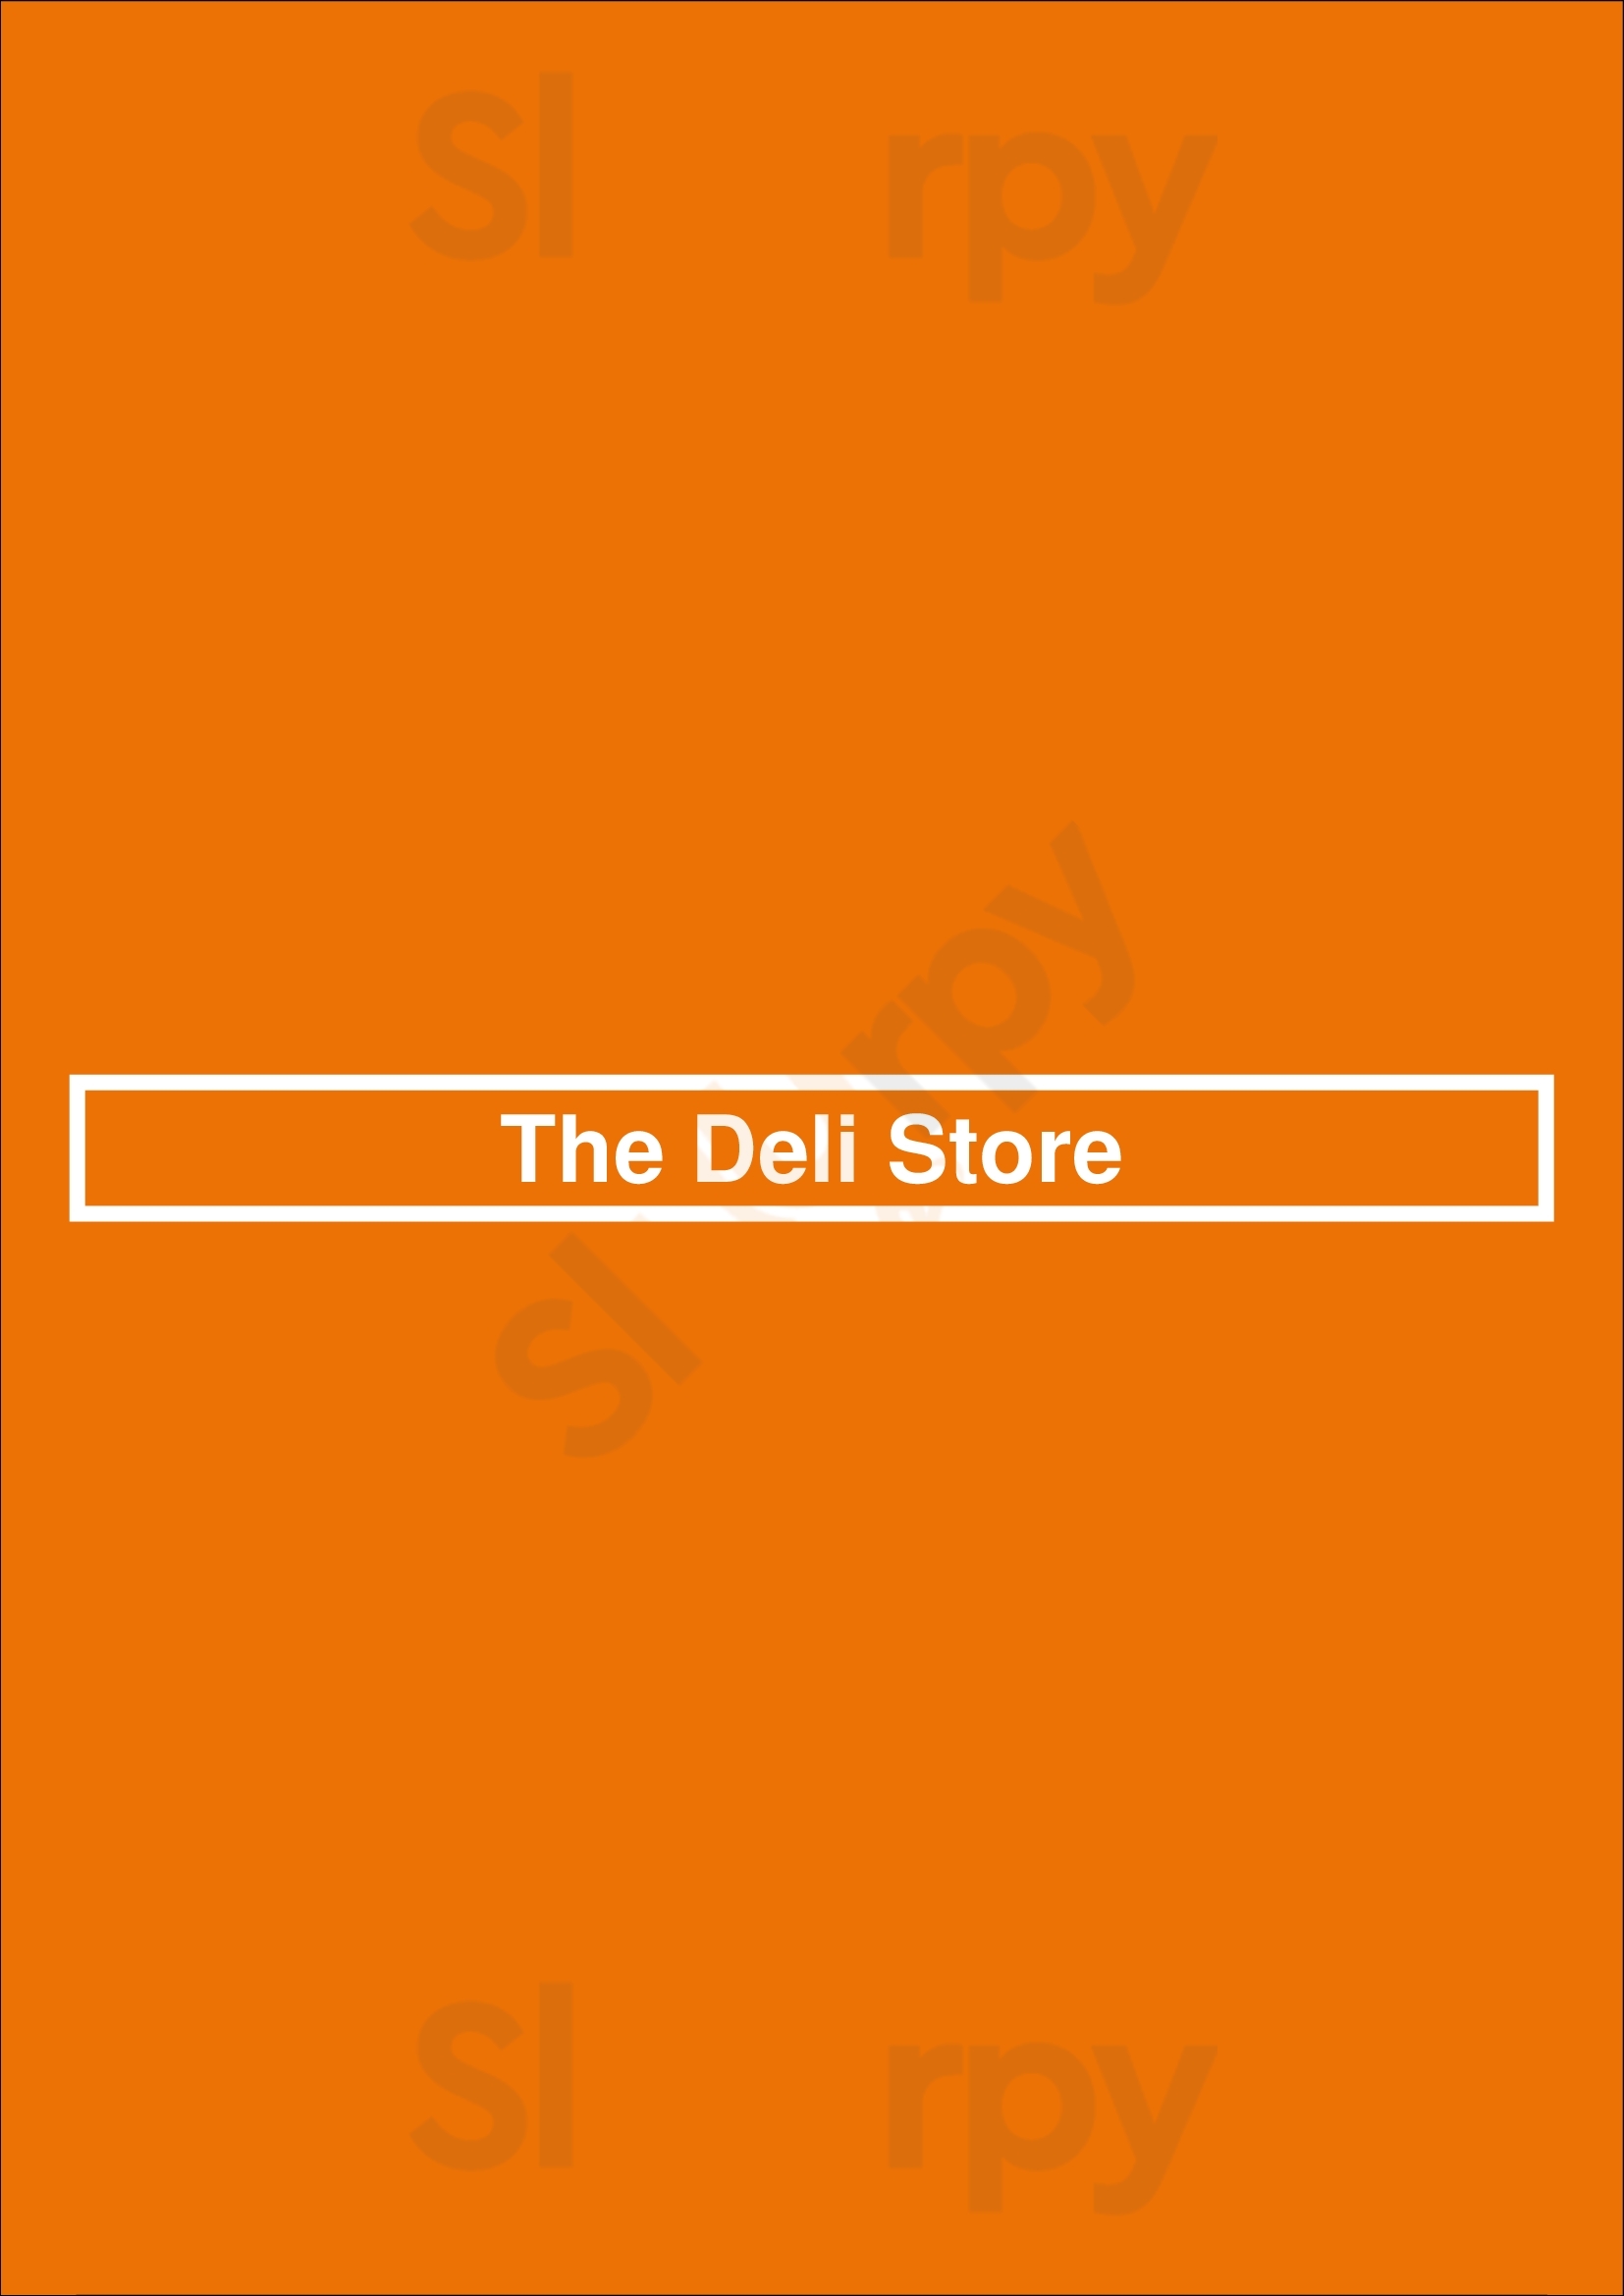 The Deli Store Ashbourne Menu - 1